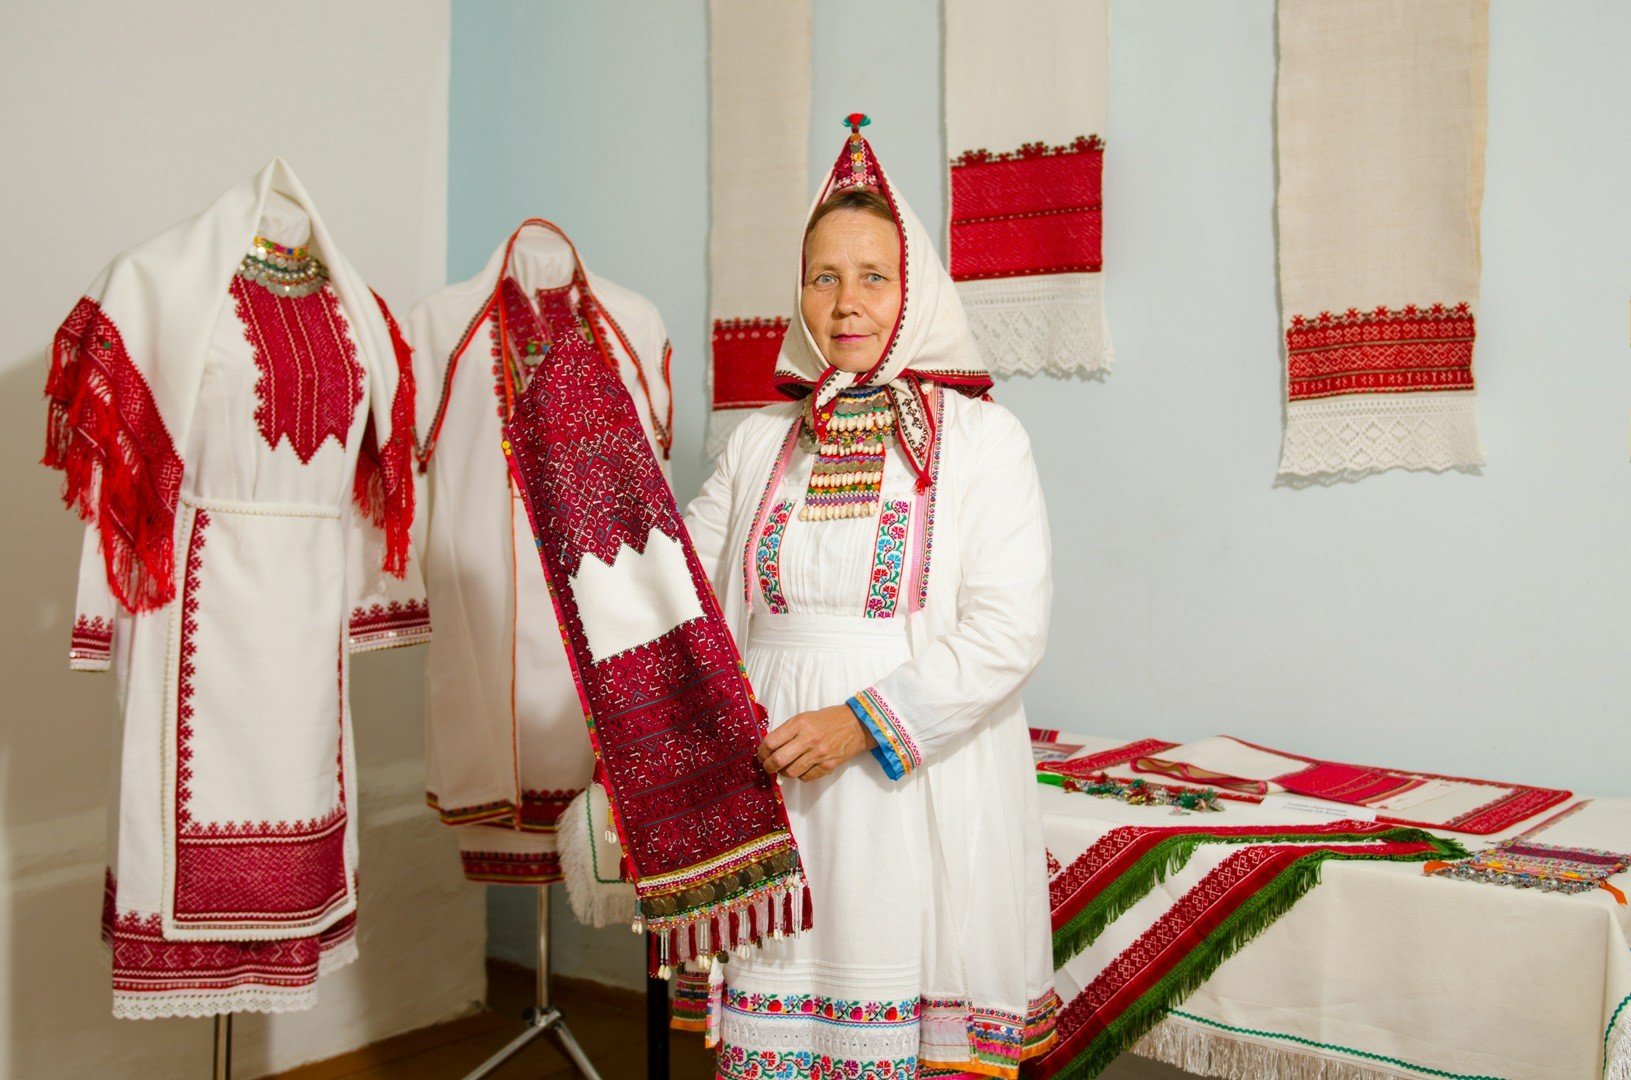 Марийский национальный костюм мужской и женский